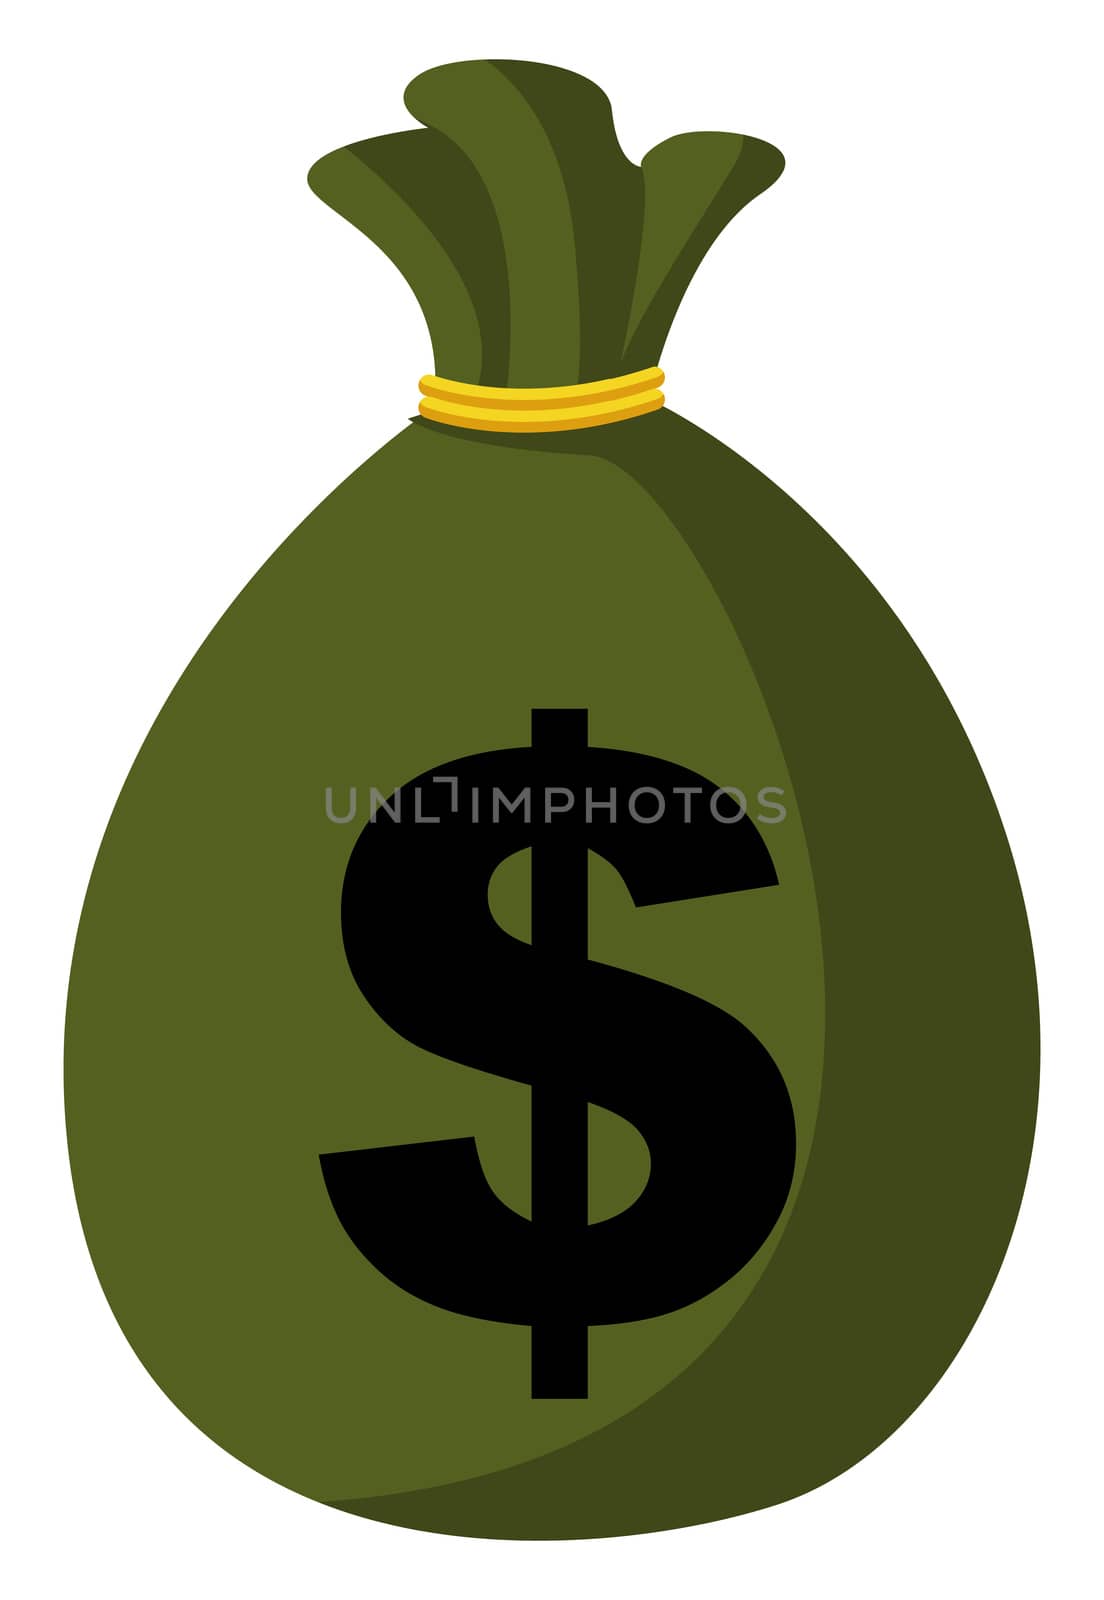 Green bag of money, illustration, vector on white background by Morphart